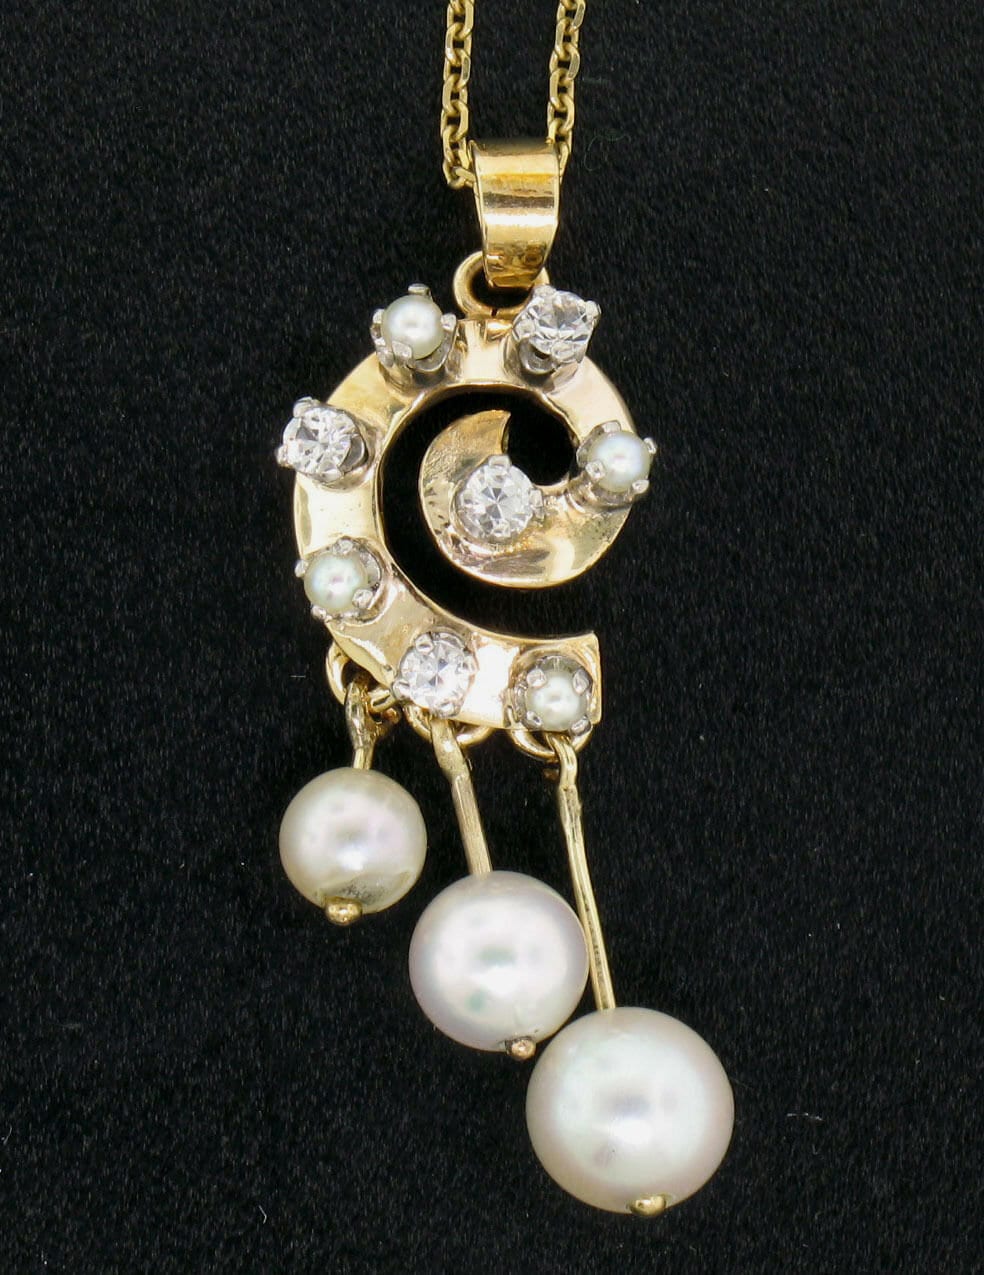 Vintage 14K Gelbgold Runde Perle & .20Ctw Prong Set Diamant Spiral Anhänger Auf 16" Kabel Gliederkette Halskette in Ausgezeichnetem Zustand von BadisJewelers